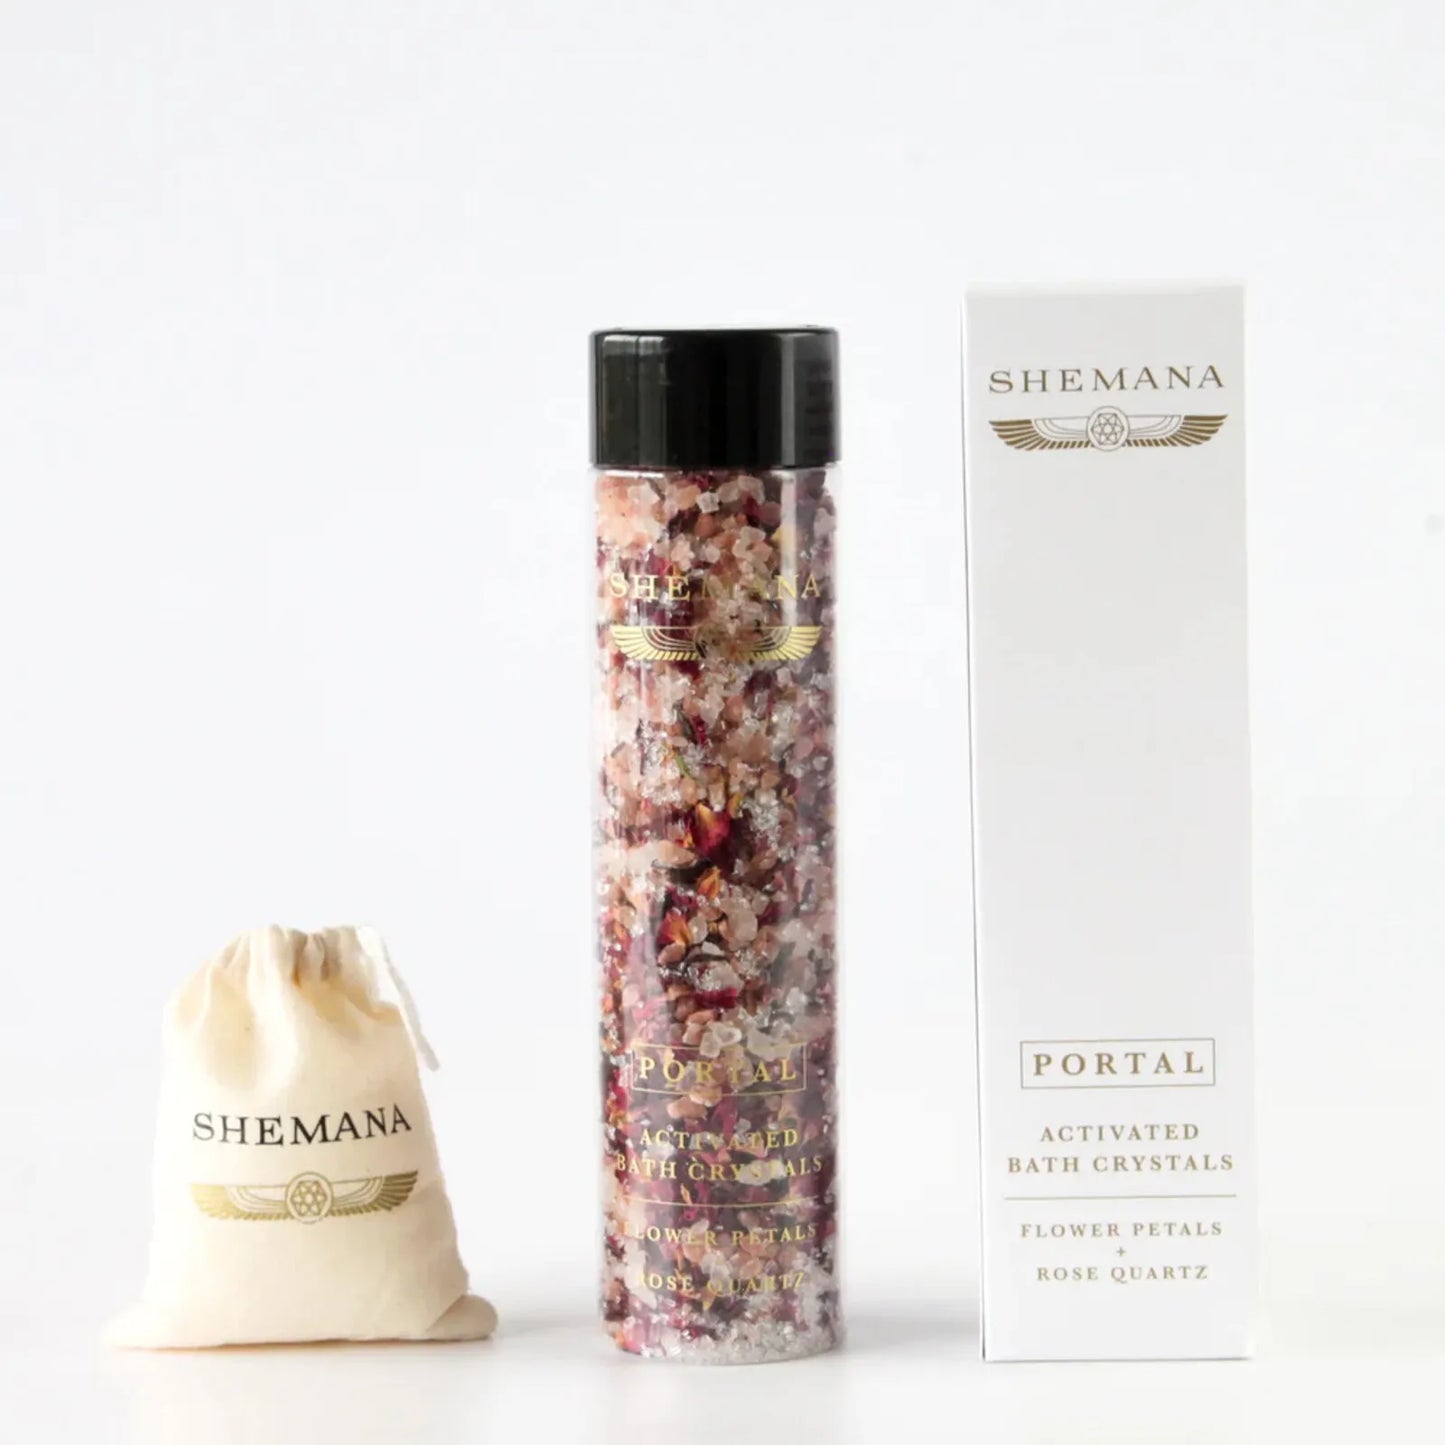 Shemana PORTAL - Rose Petals & Rose Quartz Bath Salts 300g, Activated Bath Crystals